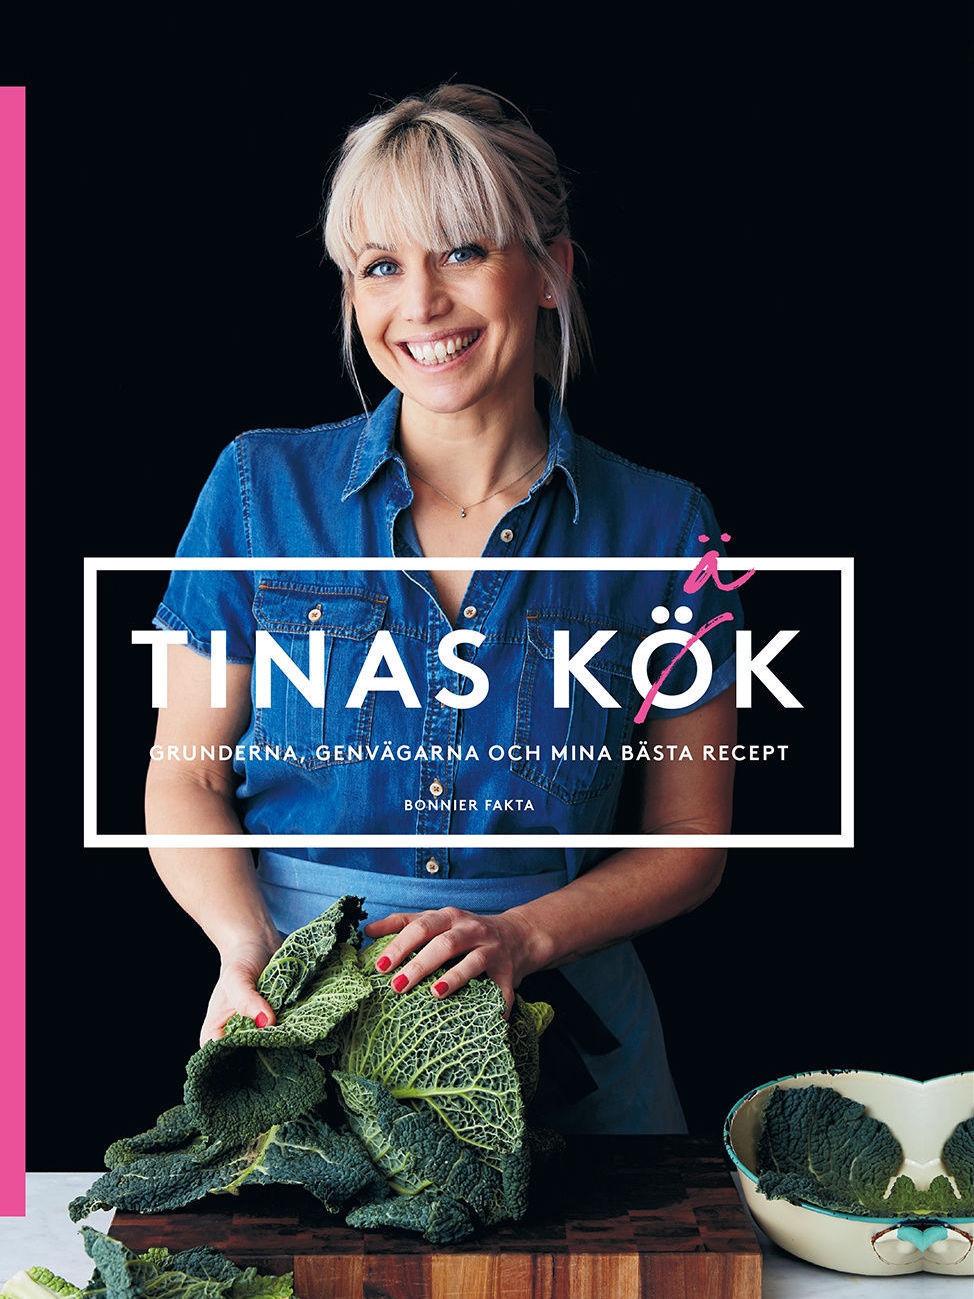 Foto: «Tinas kök, grunderna, genvägarna och mina bästa recept», Bonnier Fakta, fotograf Lennart Weibull